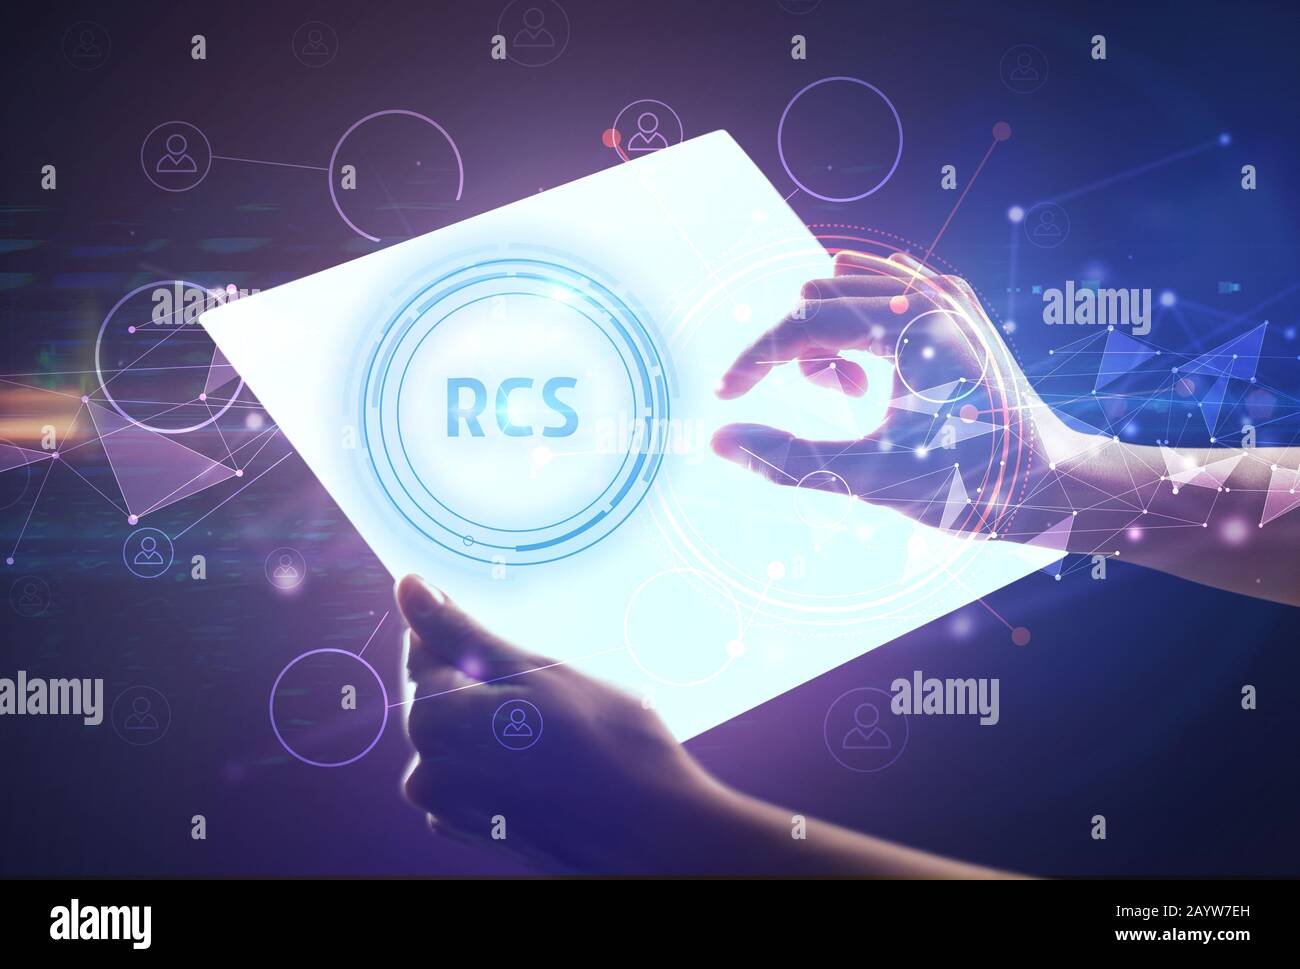 Tablette futuriste avec inscription RCS, concept technologique moderne Banque D'Images